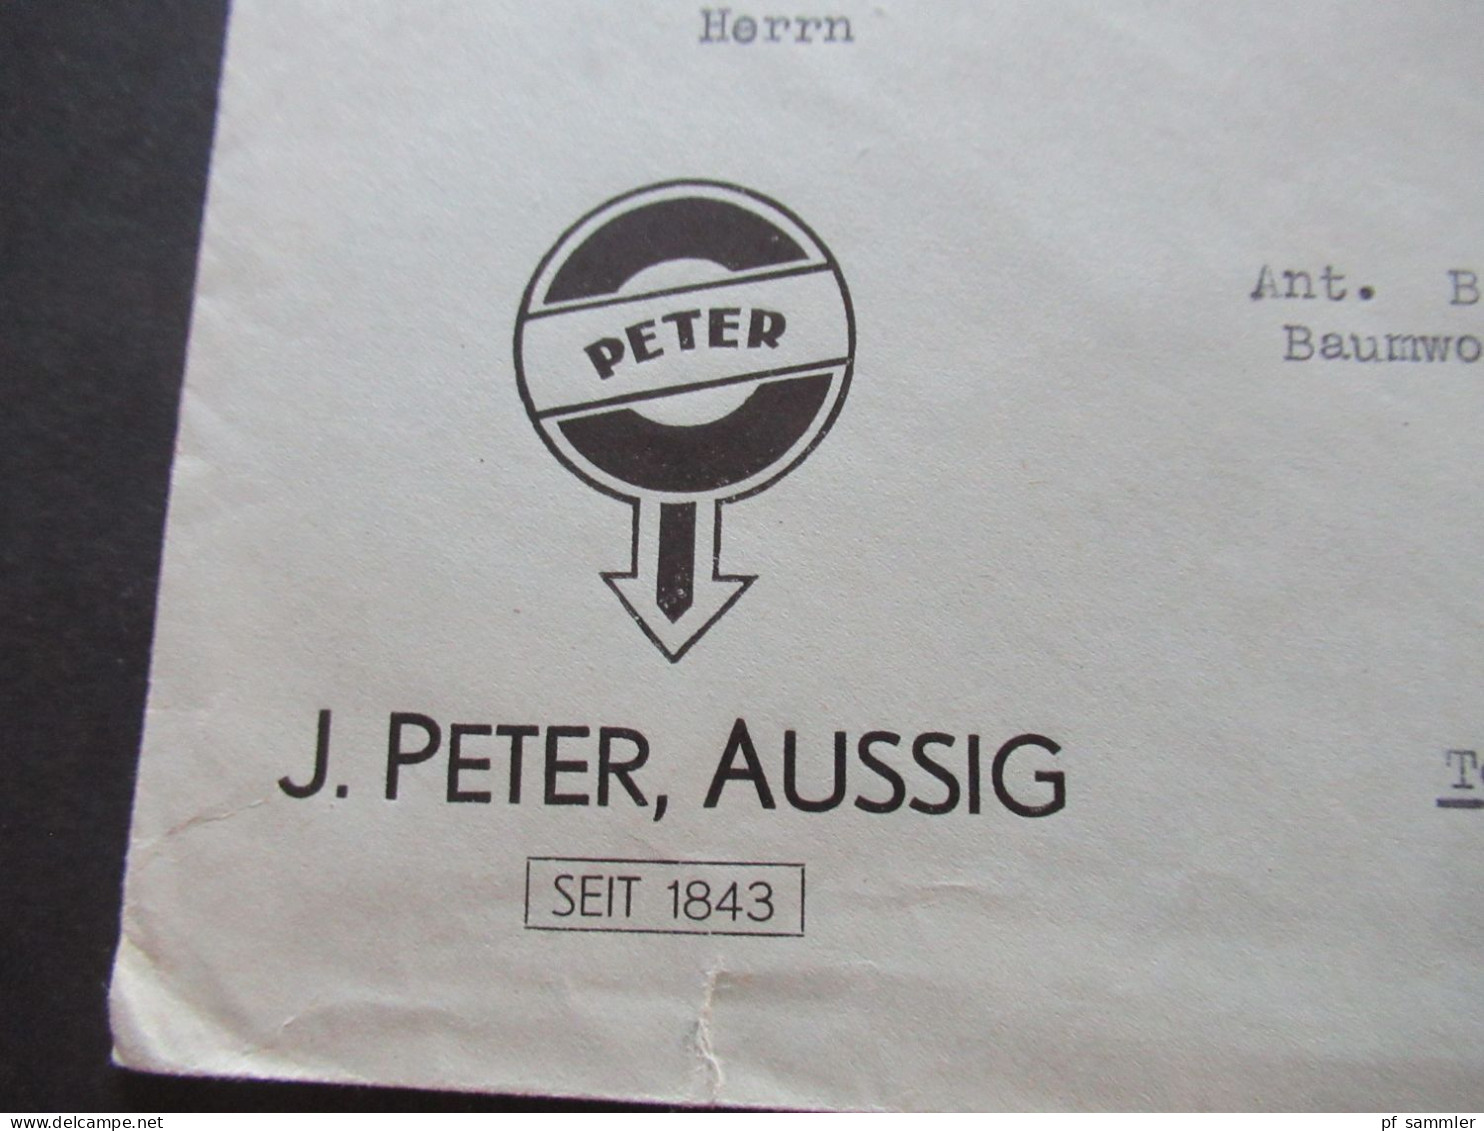 3.Reich Sudetenland 29.10.1938 Violetter Stempel Aussig Umschlag J.Peter Aussig Seit 1843 - Teplitz Schönau - Sudetenland